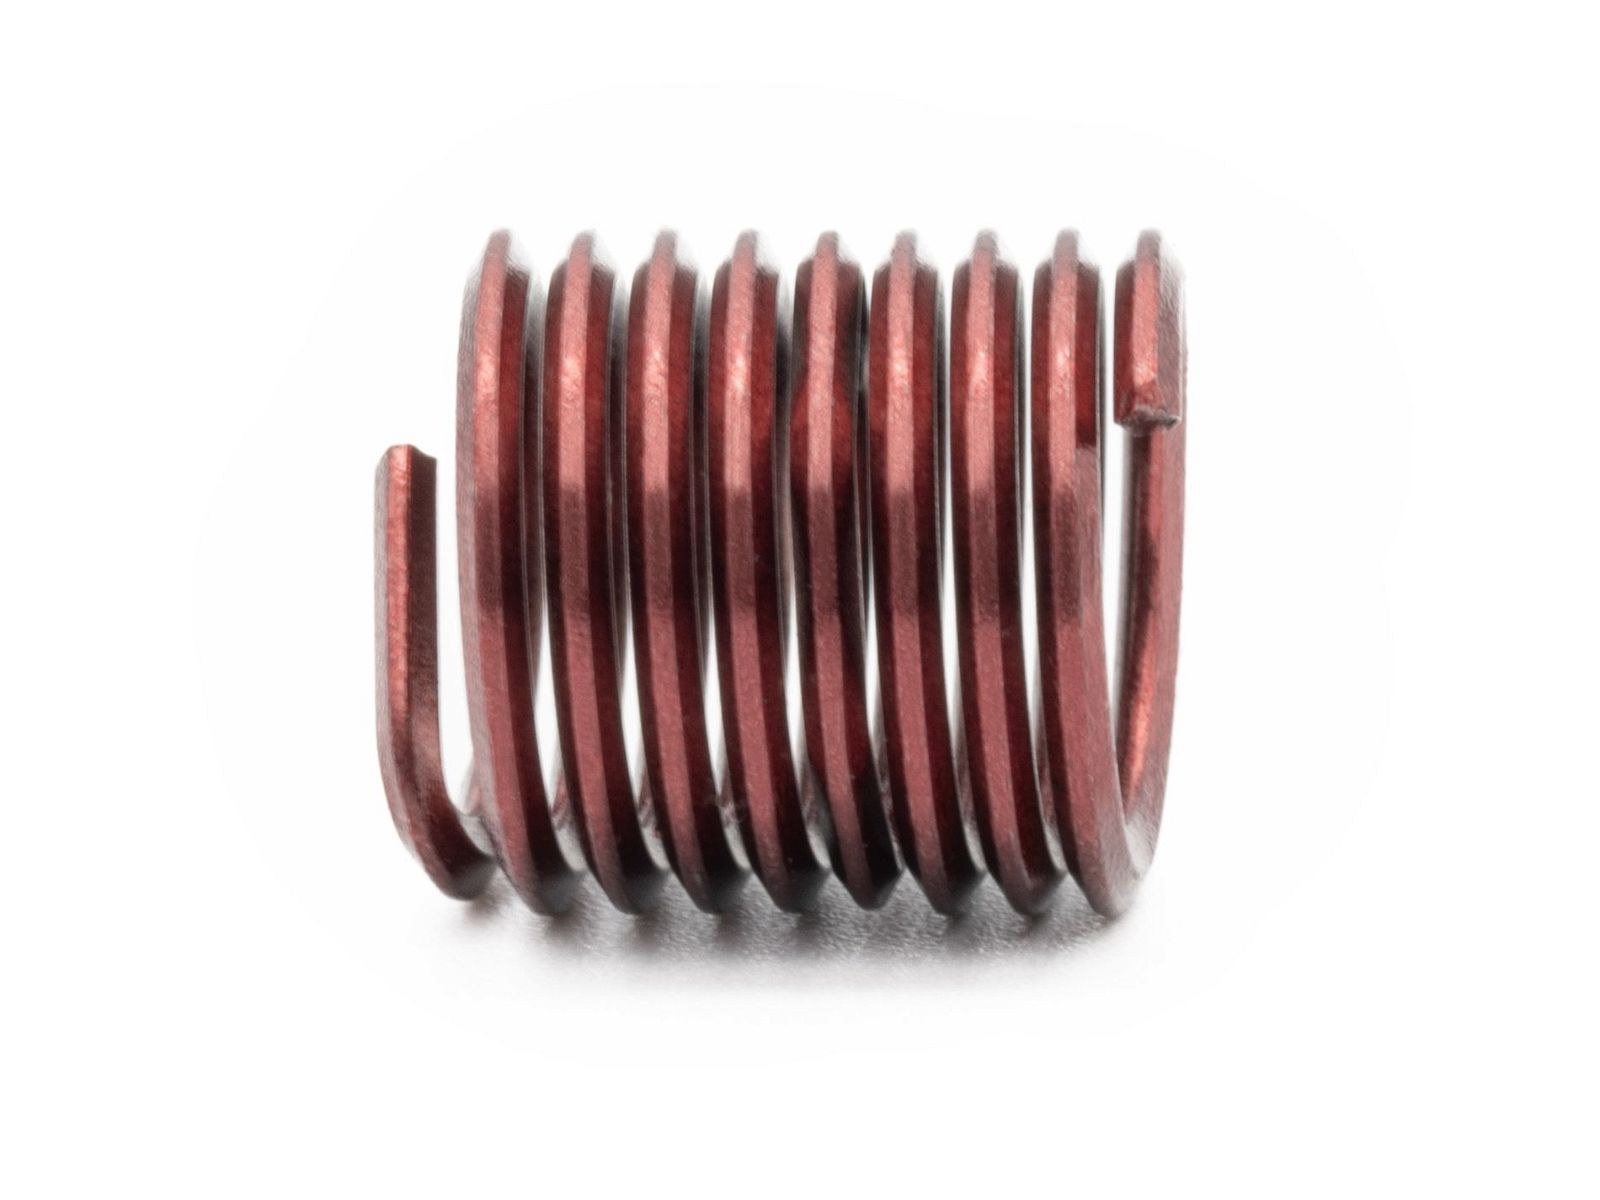 BaerCoil Wire Thread Inserts UNC 7/8 x 9 - 1.5 D (33.34 mm) - screw grip (screw locking) - 10 pcs.